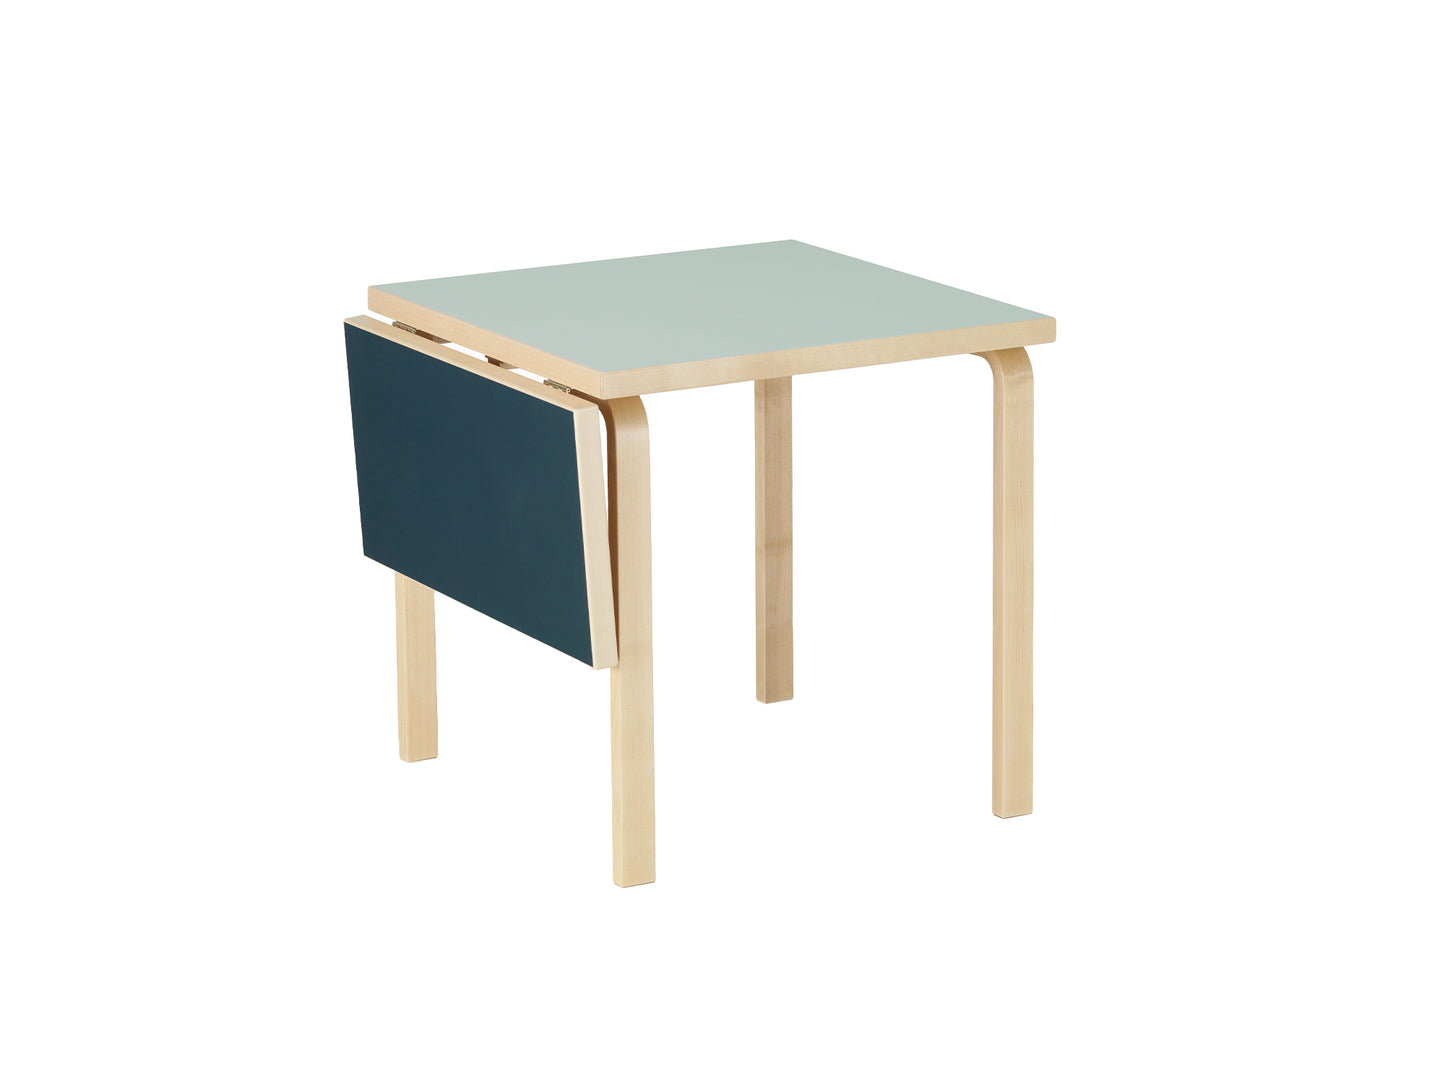 Aalto Table Foldable by Artek - Top: Vapour Linoleum / Drop Leaf: Smokey Blue Linoleum